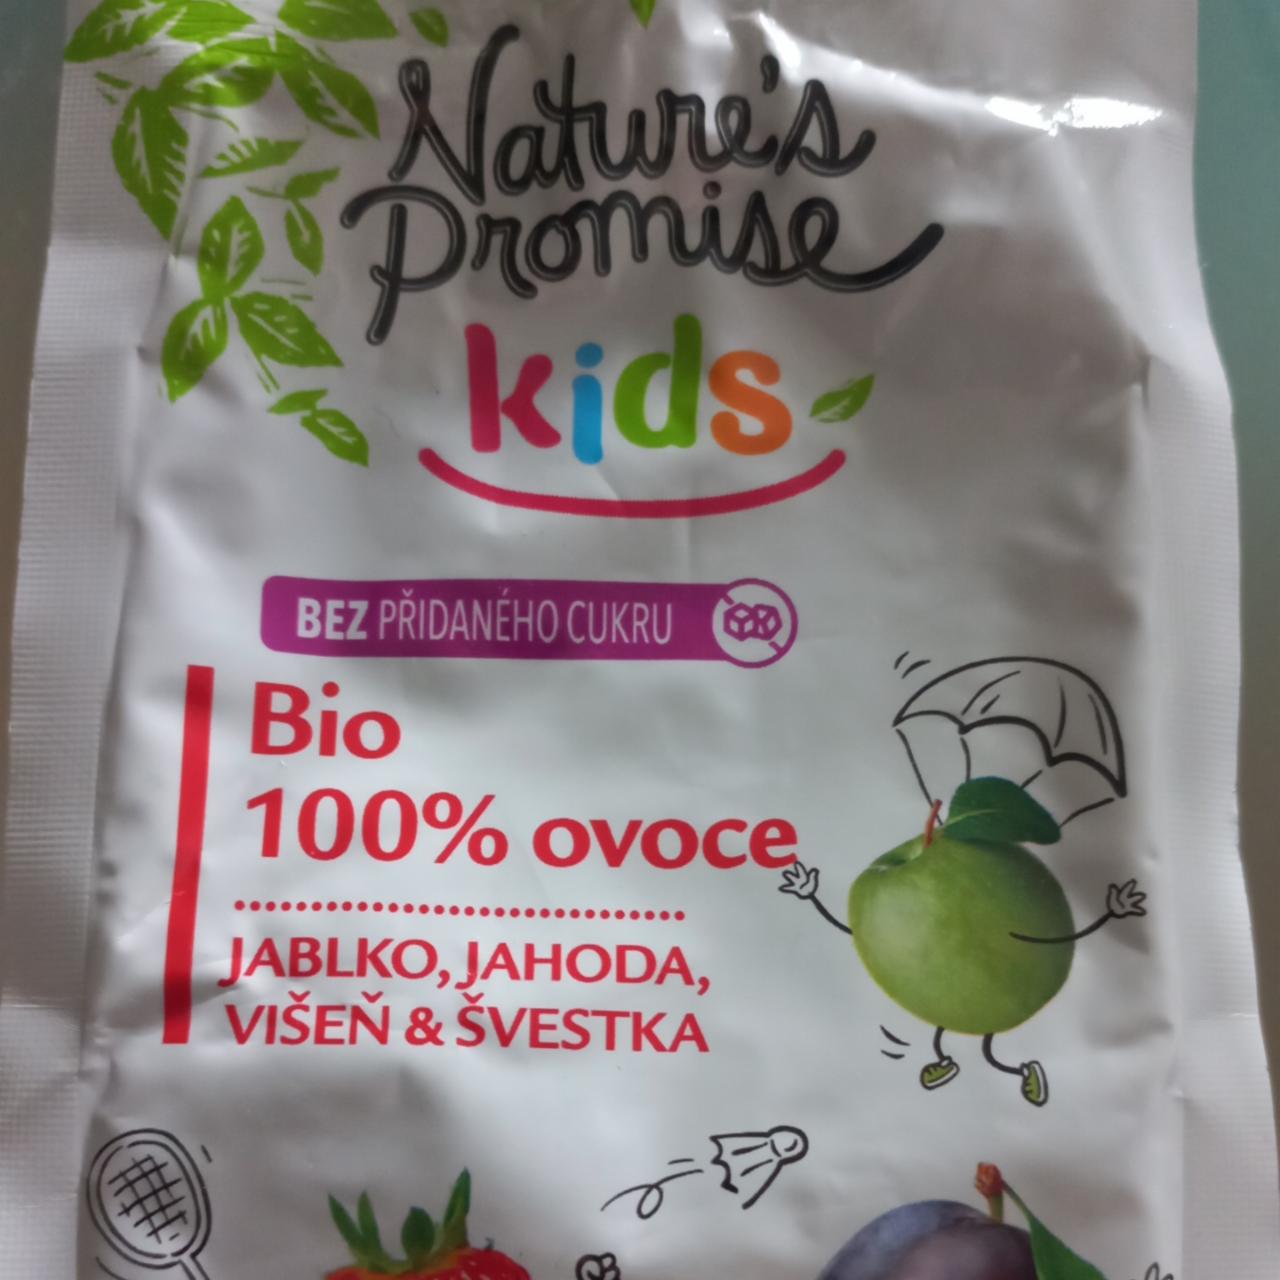 Fotografie - Kids Bio 100% ovoce jablko, jahoda, višeň & švestka Nature's Promise